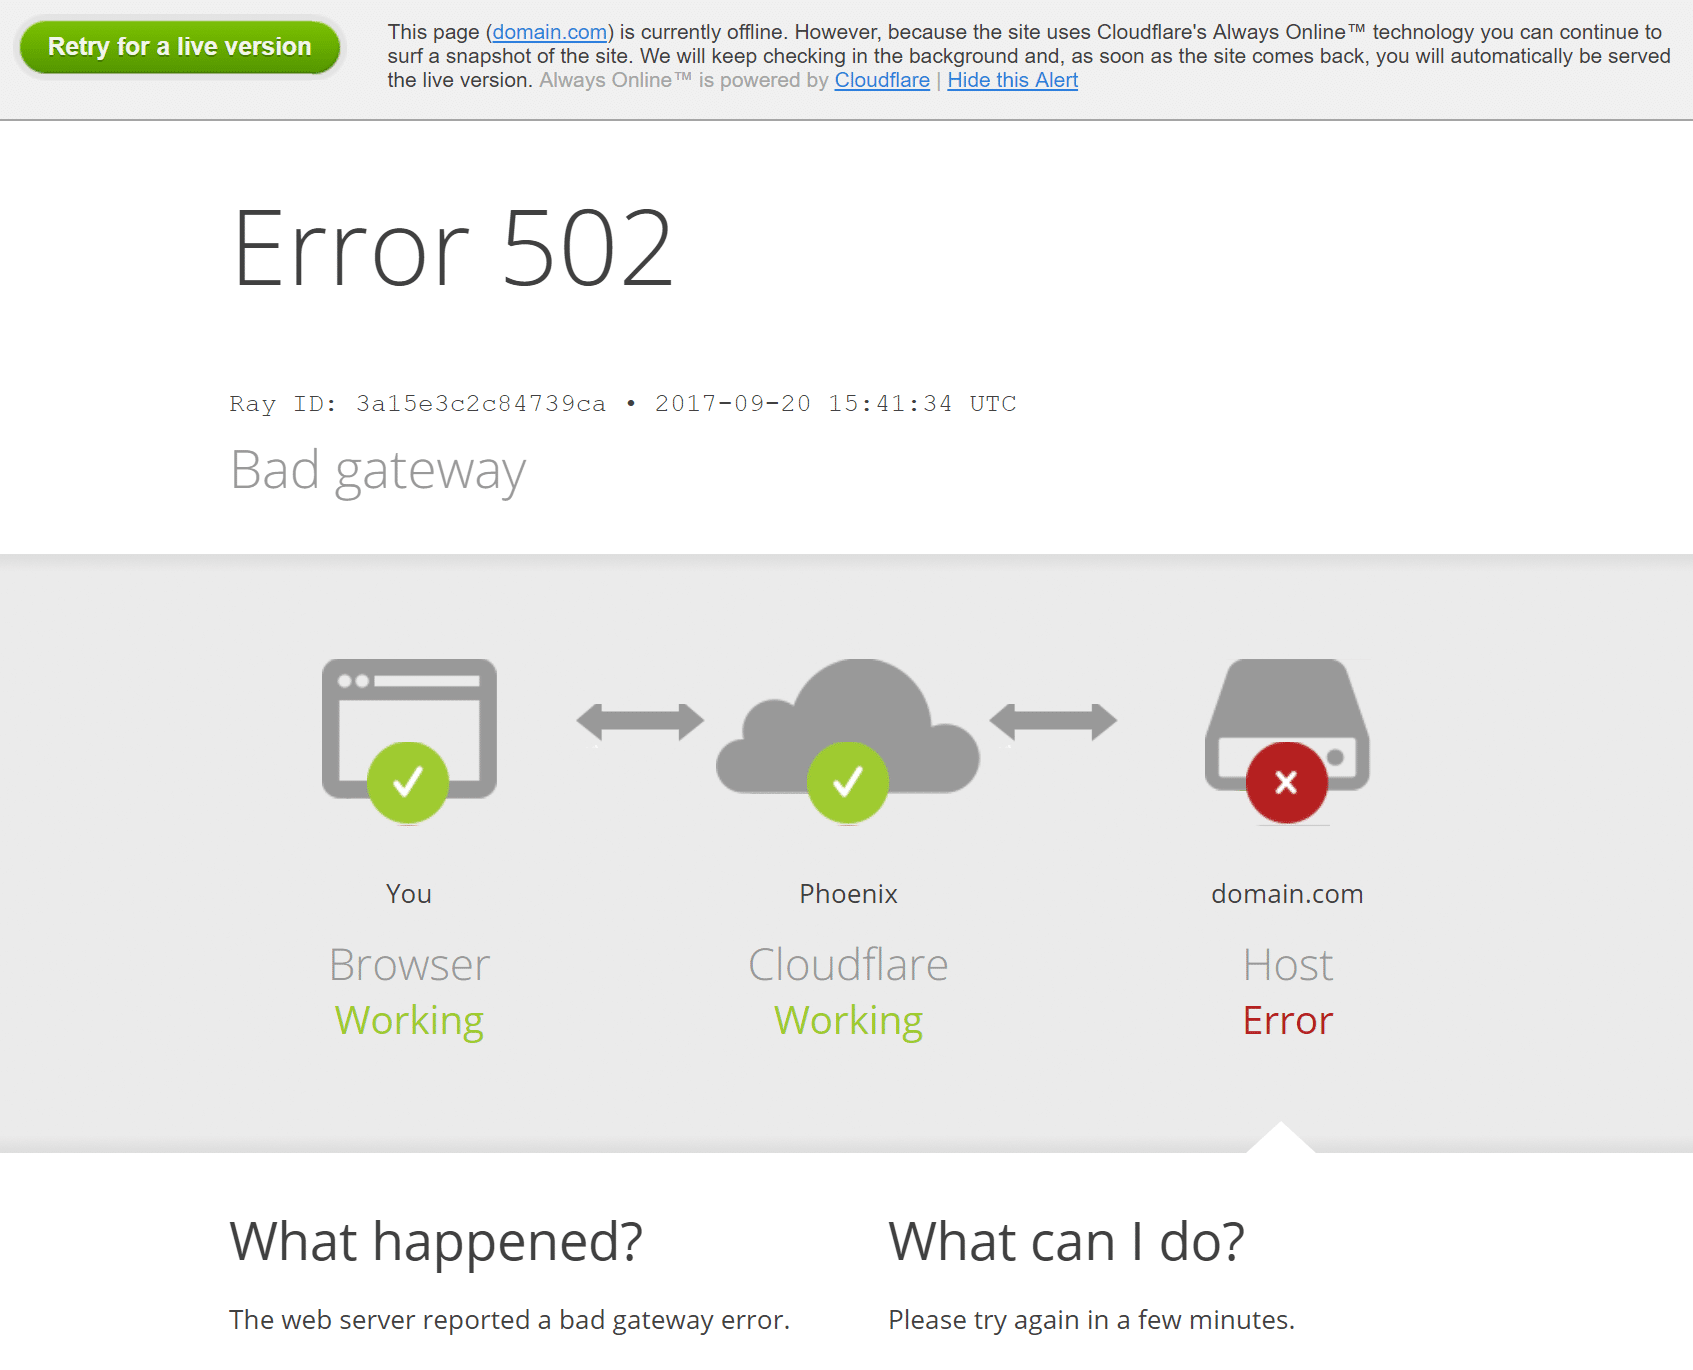 Cloudflare Fix Bad Gateway 502 Error wordpress website